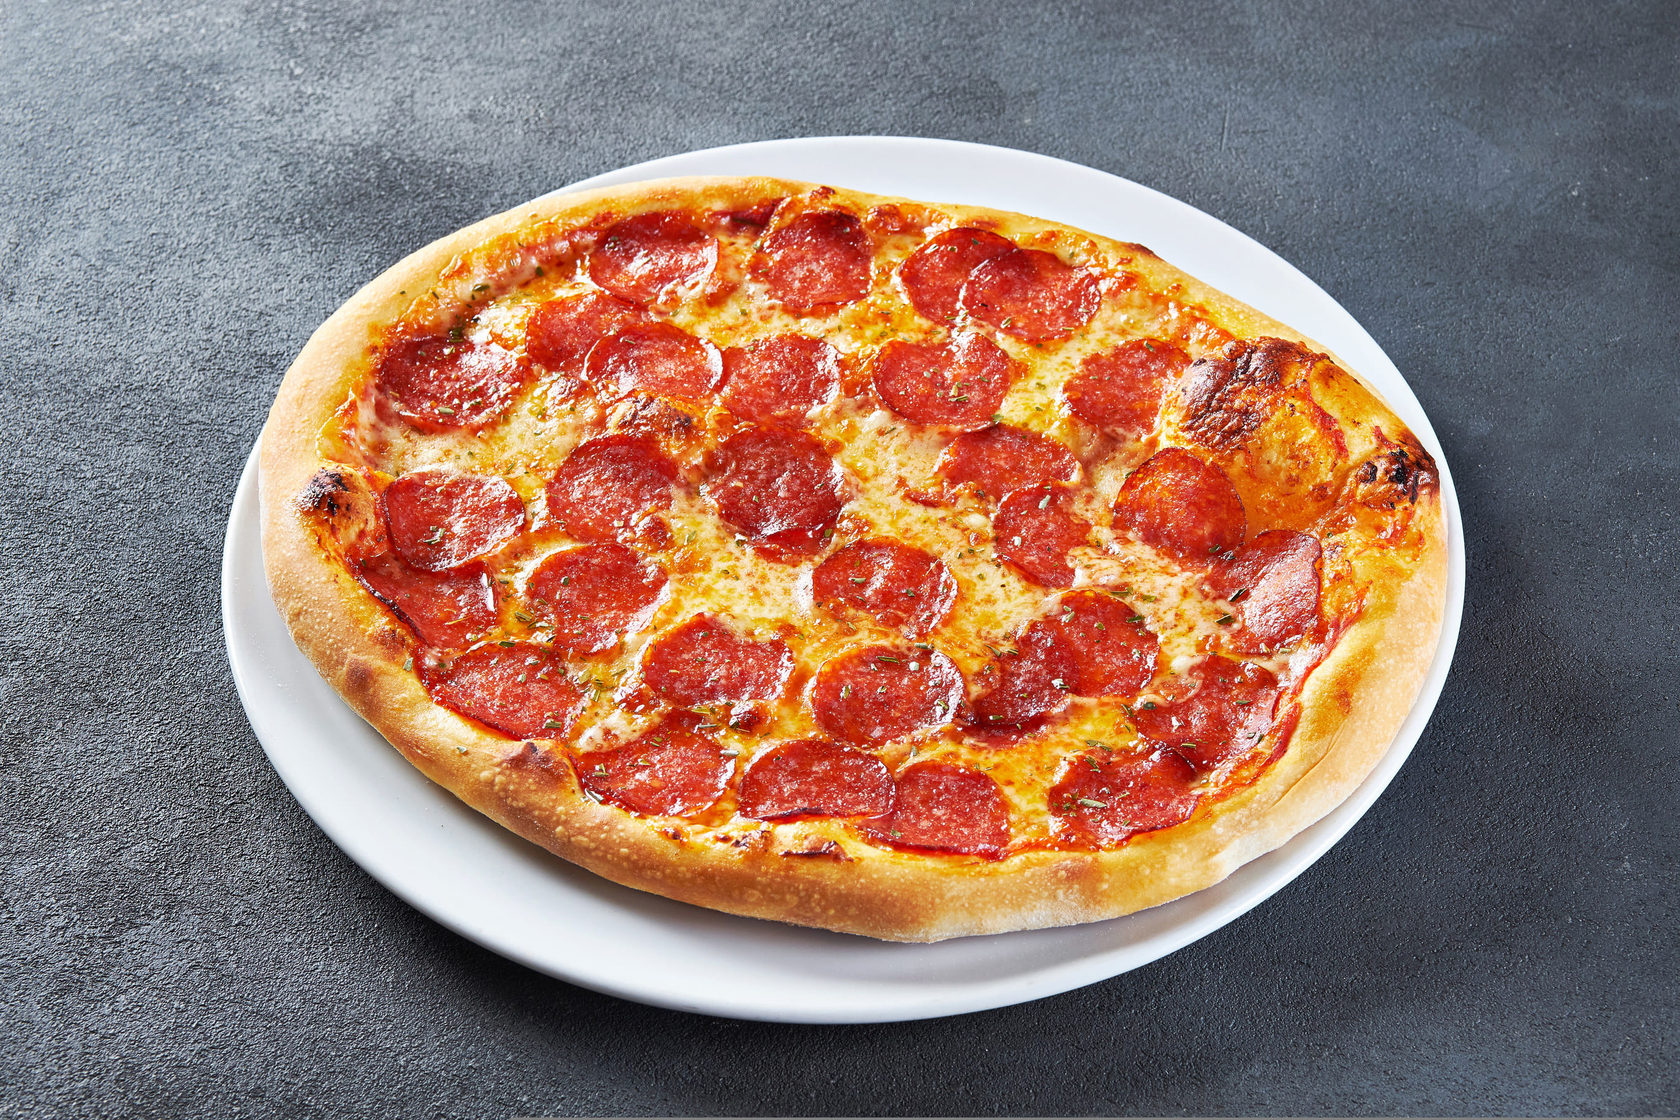 сколько стоит маленькая пицца пепперони фото 96